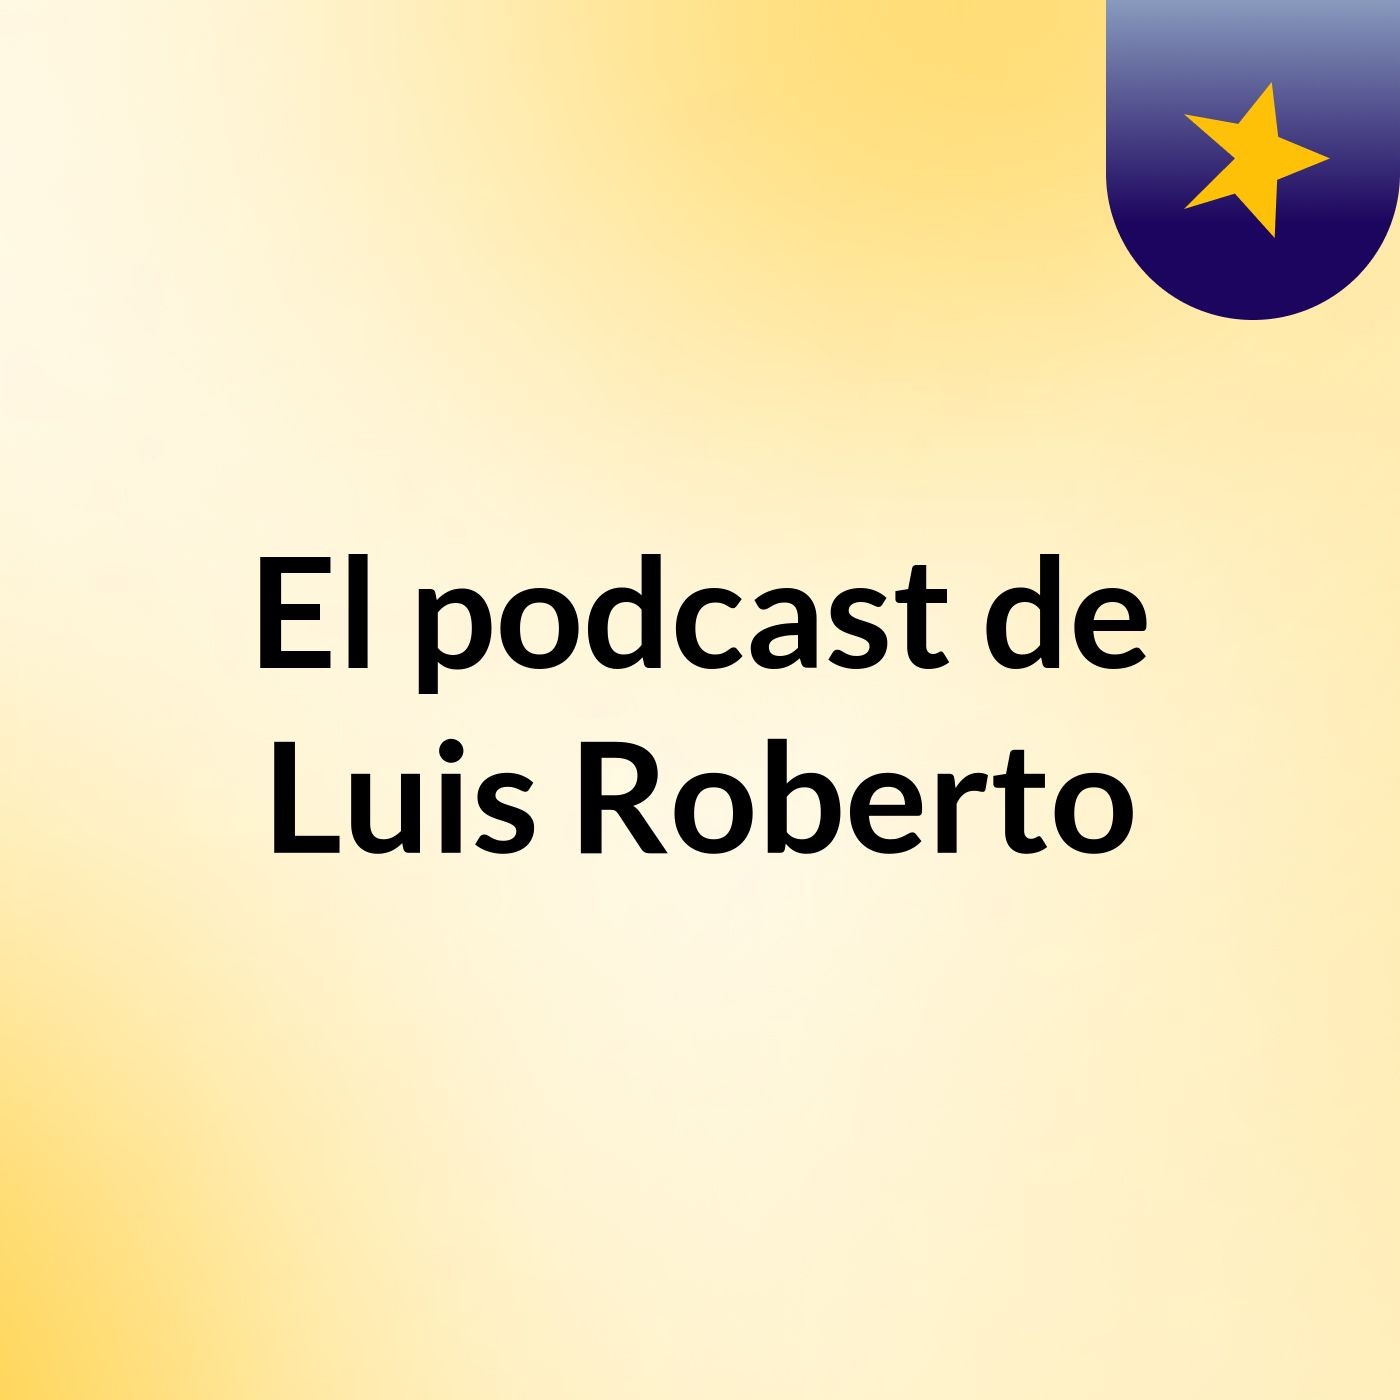 El podcast de Luis Roberto